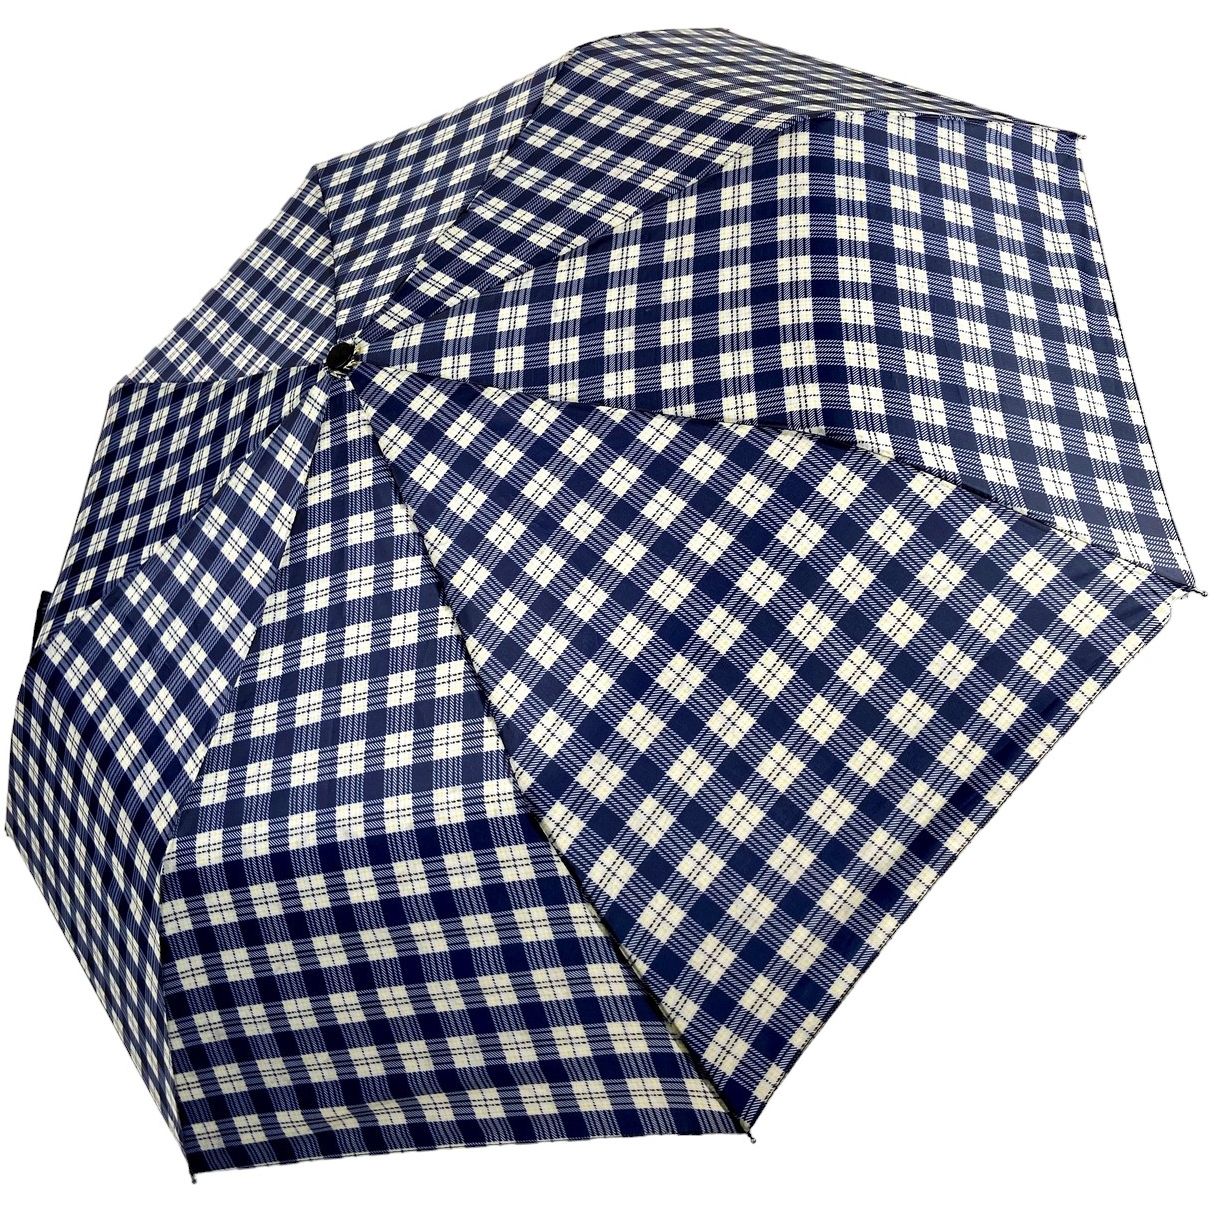 Женский складной зонтик полуавтомат S&L 98 см синий - фото 1